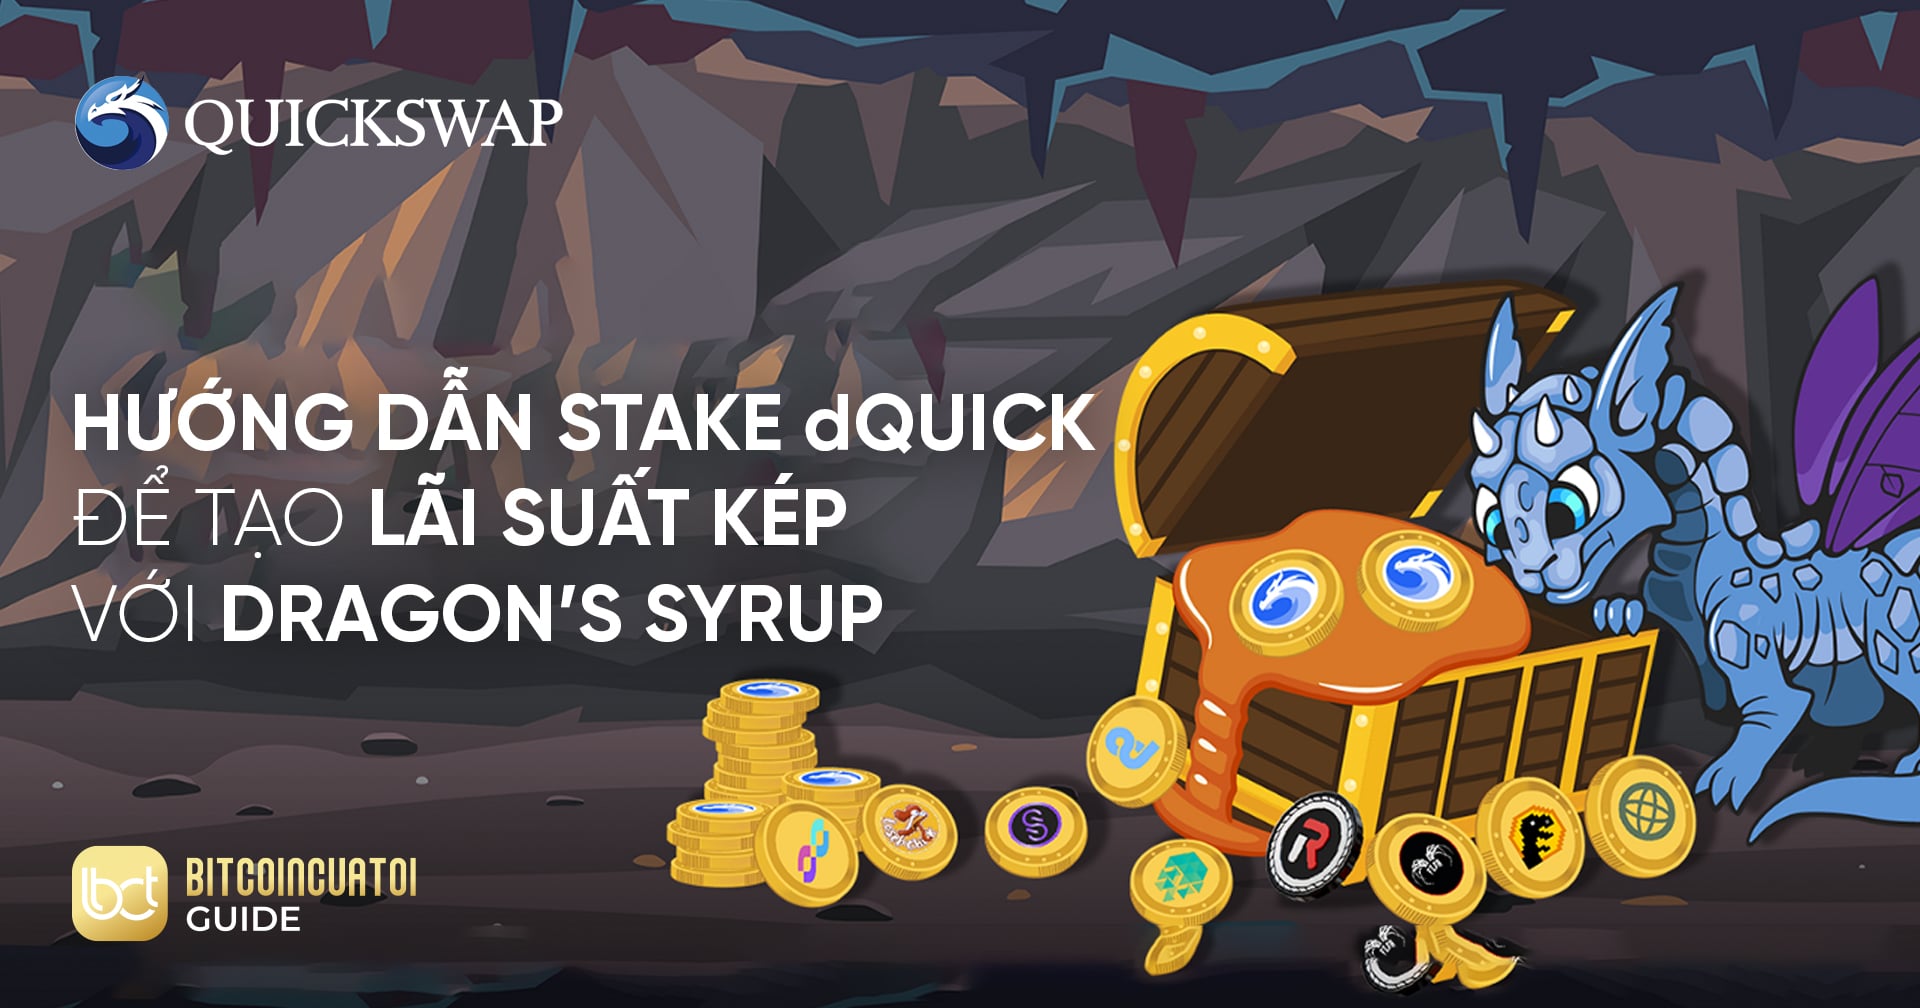 Hướng dẫn stake dQUICK để tạo lãi suất kép với Dragon’s Syrup